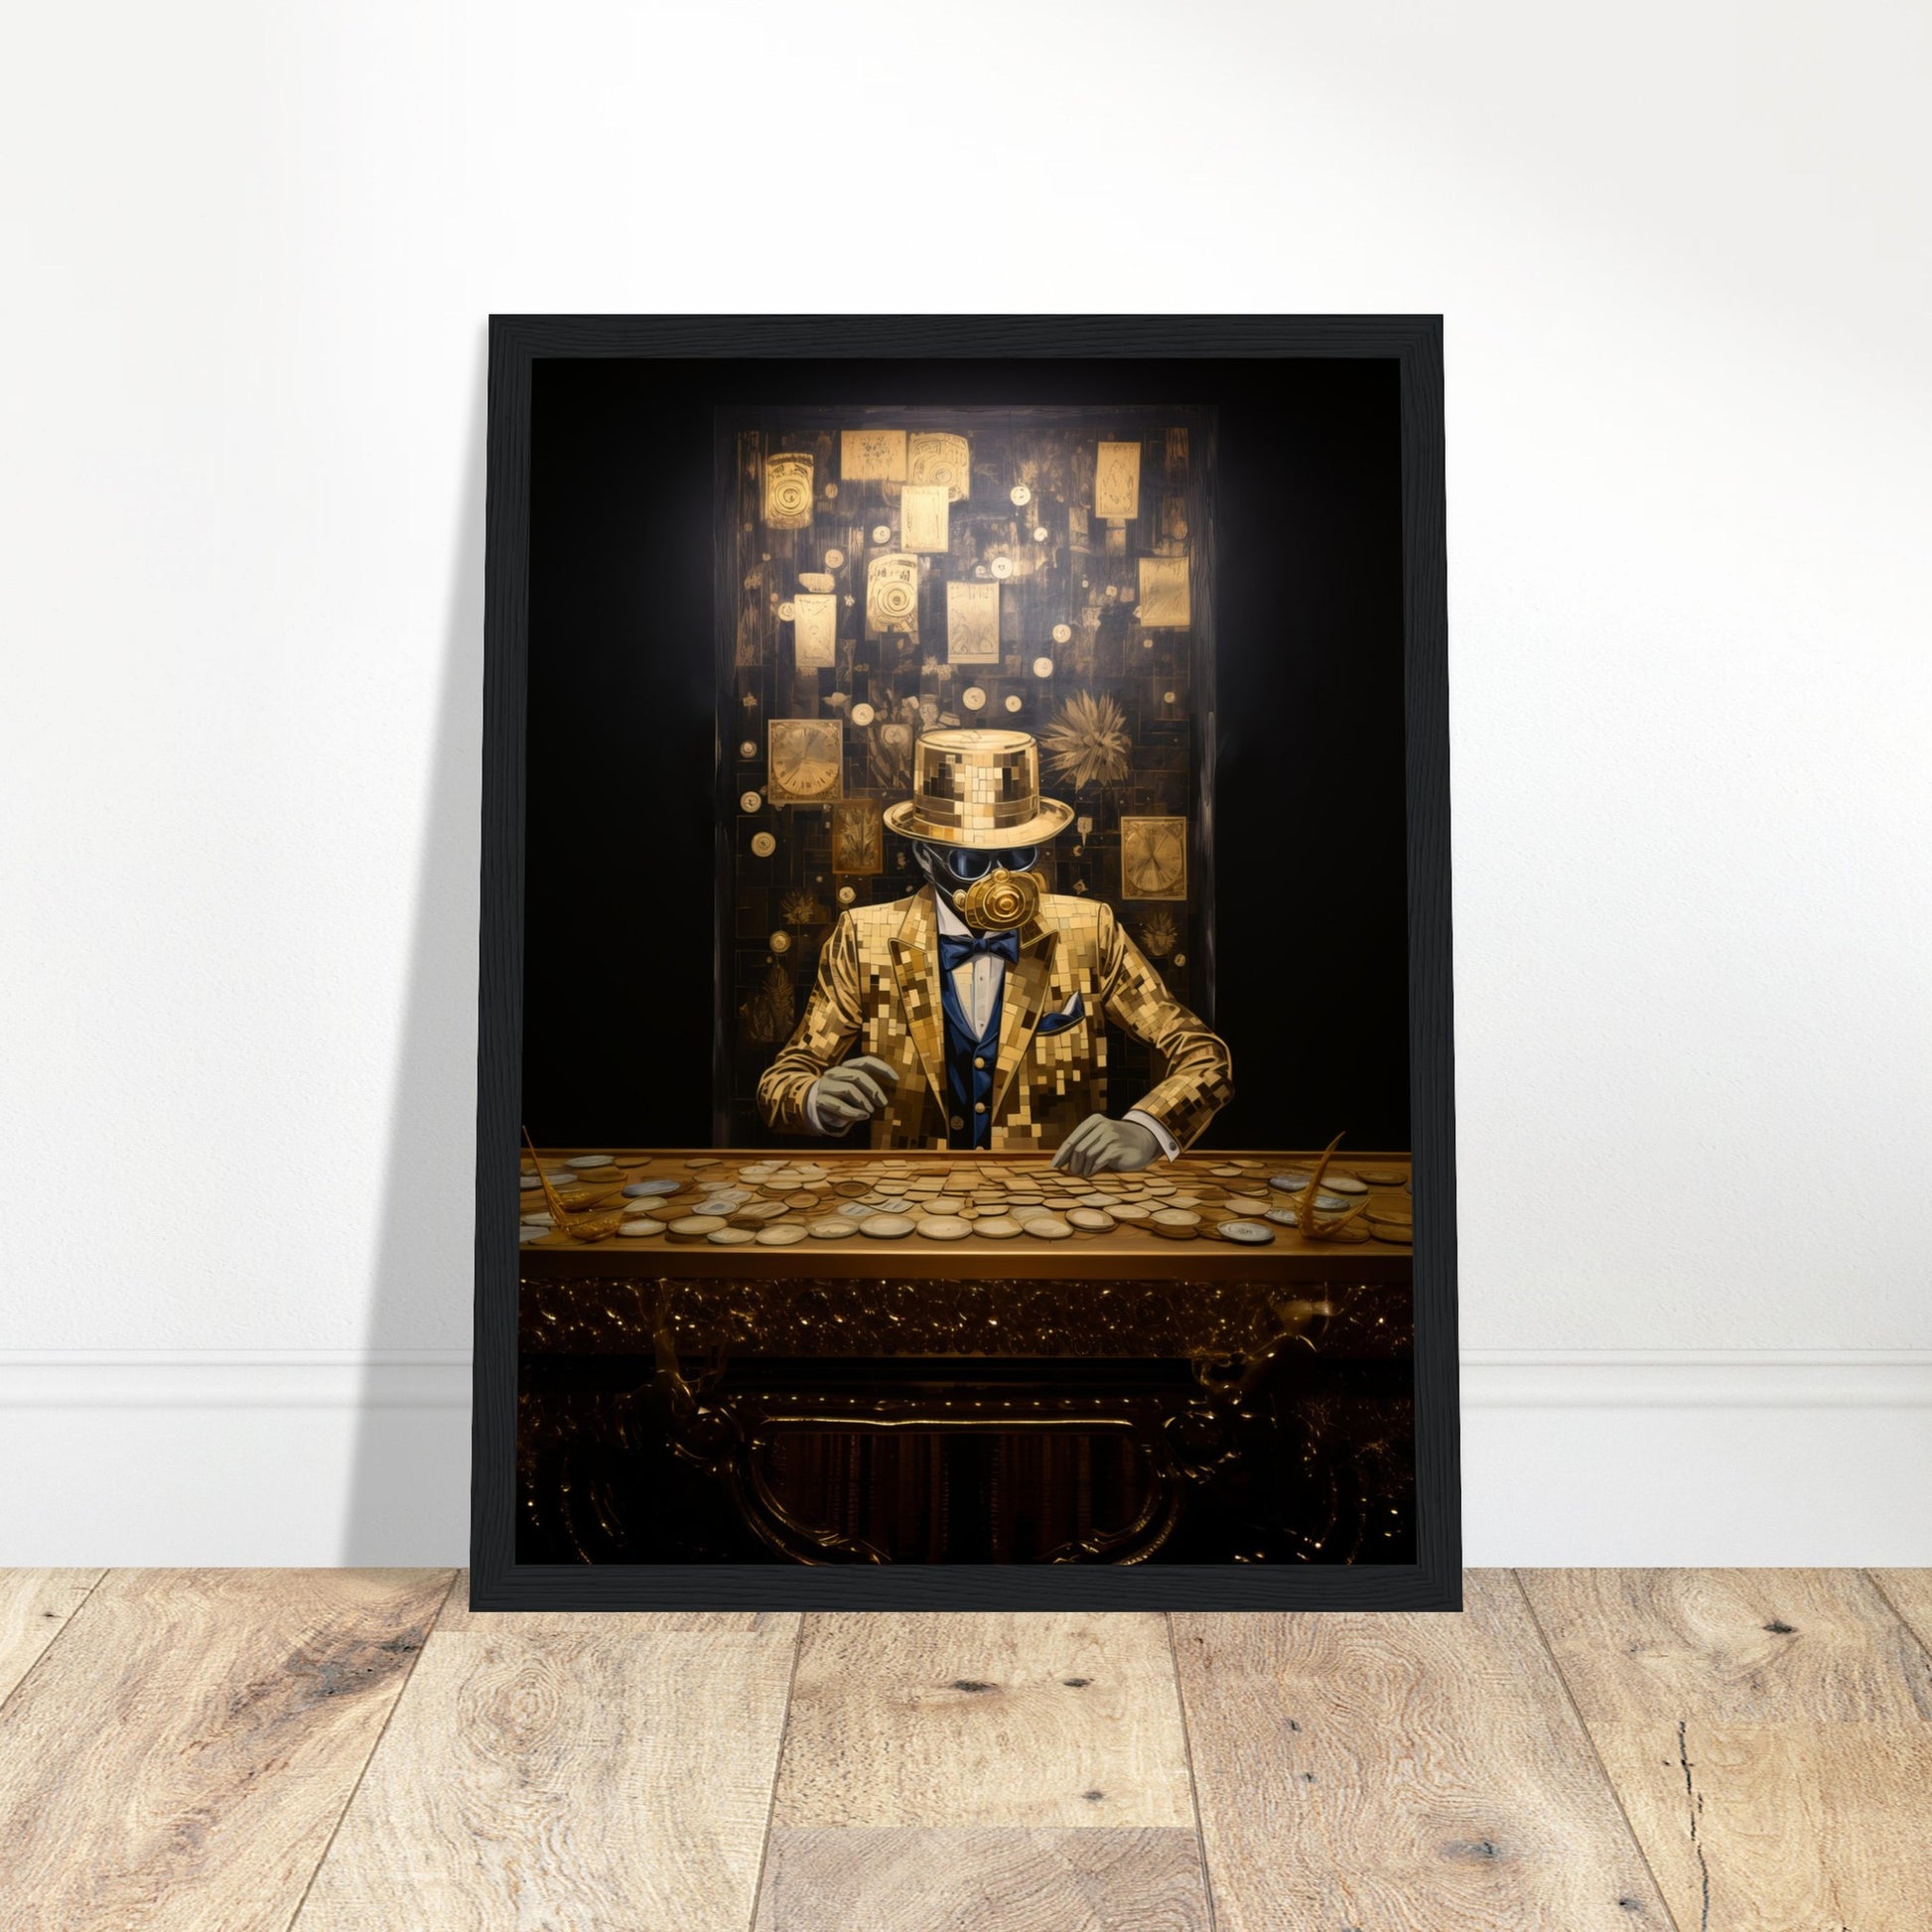 Golden Financier Abstract Artwork - Print Room Ltd White frame 30x40 cm / 12x16"